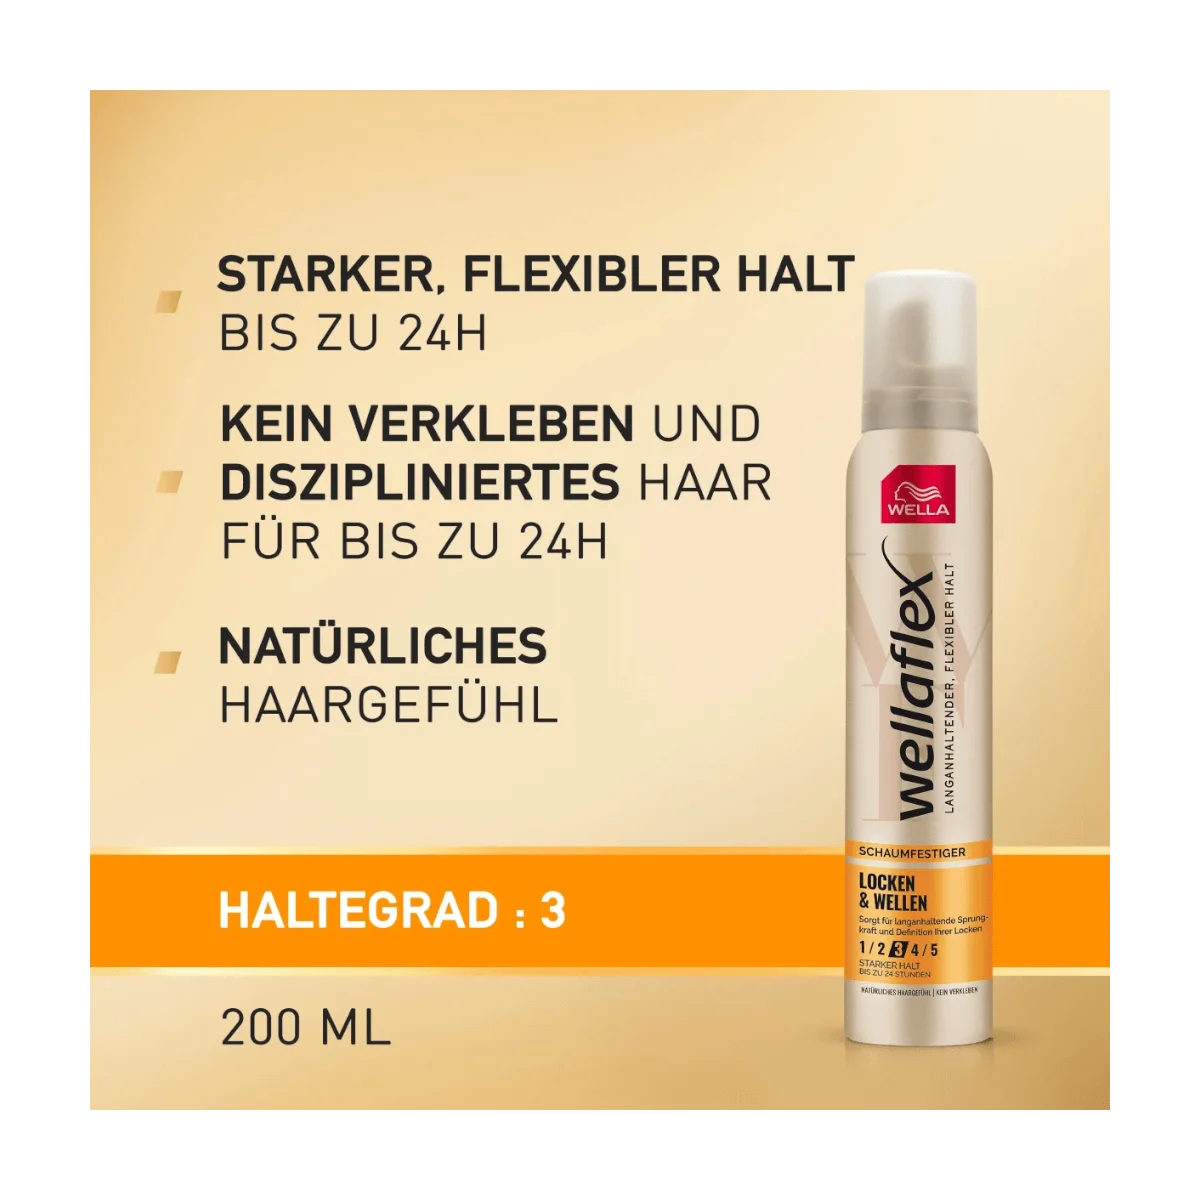 Wellaflex Schaumfestiger Locken & Wellen, 200 ml